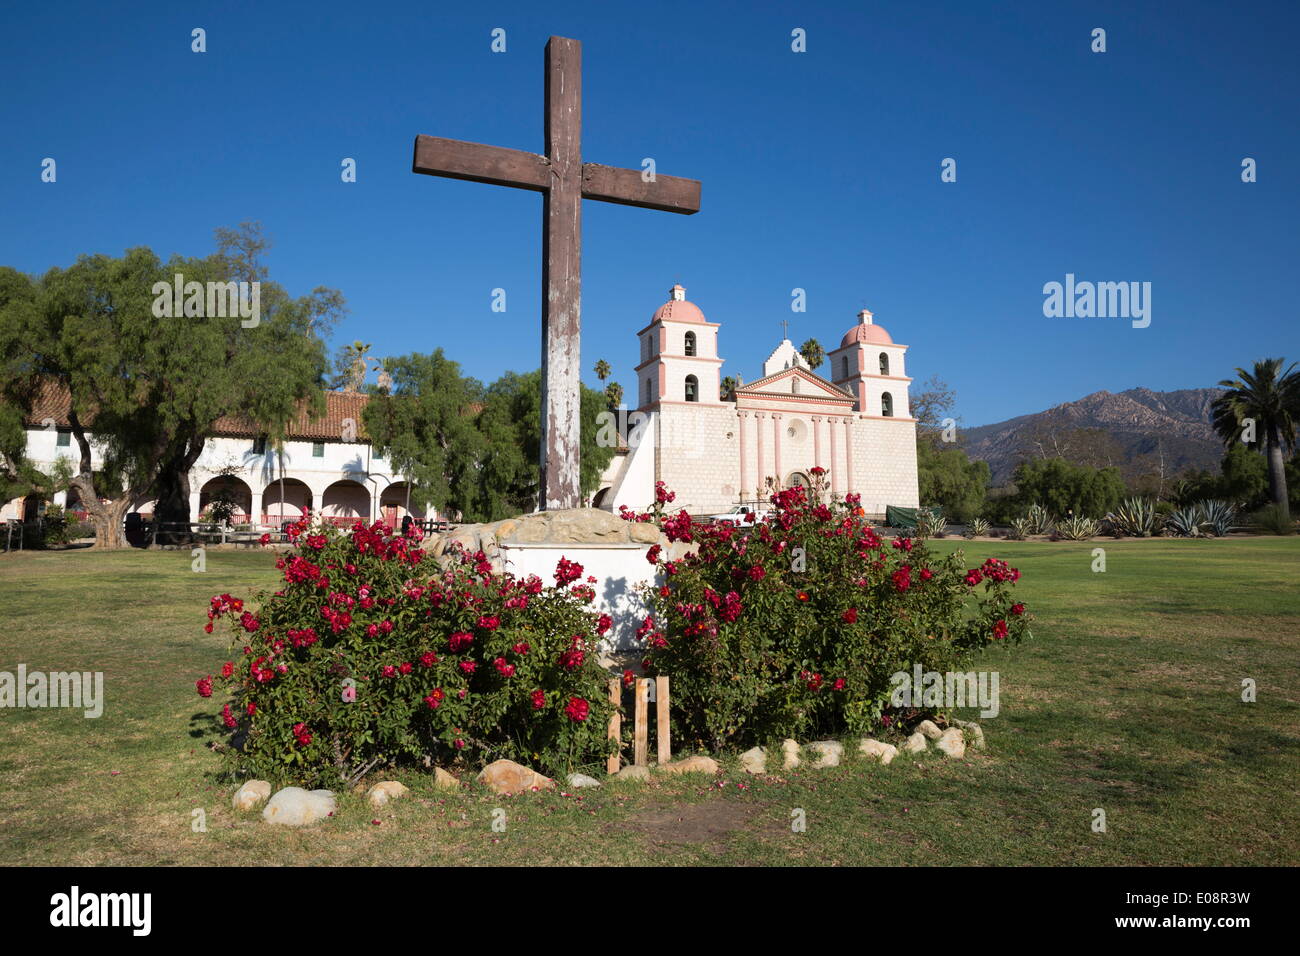 La vieille Mission Santa Barbara (construit en 1786), Santa Barbara, Santa Barbara County, Californie, États-Unis d'Amérique, Amérique du Nord Banque D'Images